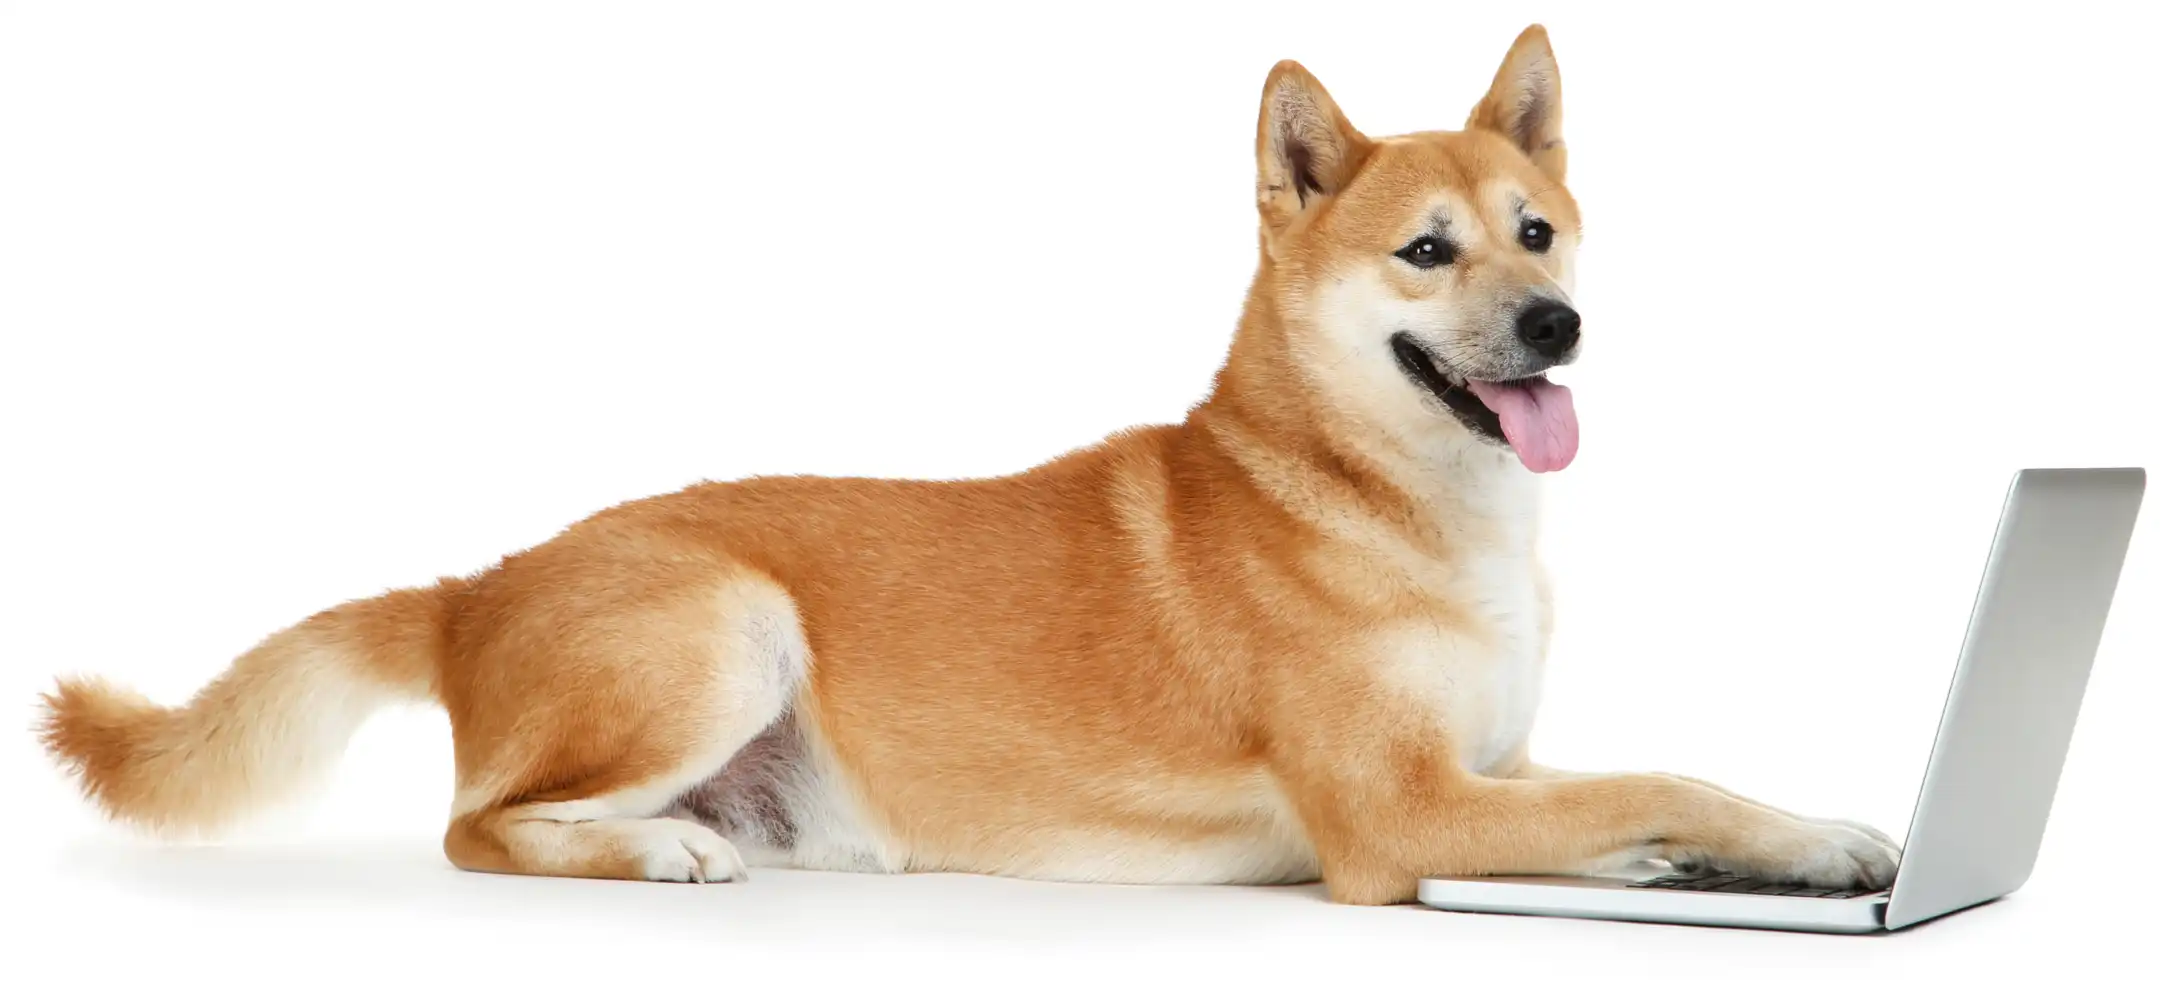 Sumo dog on laptop